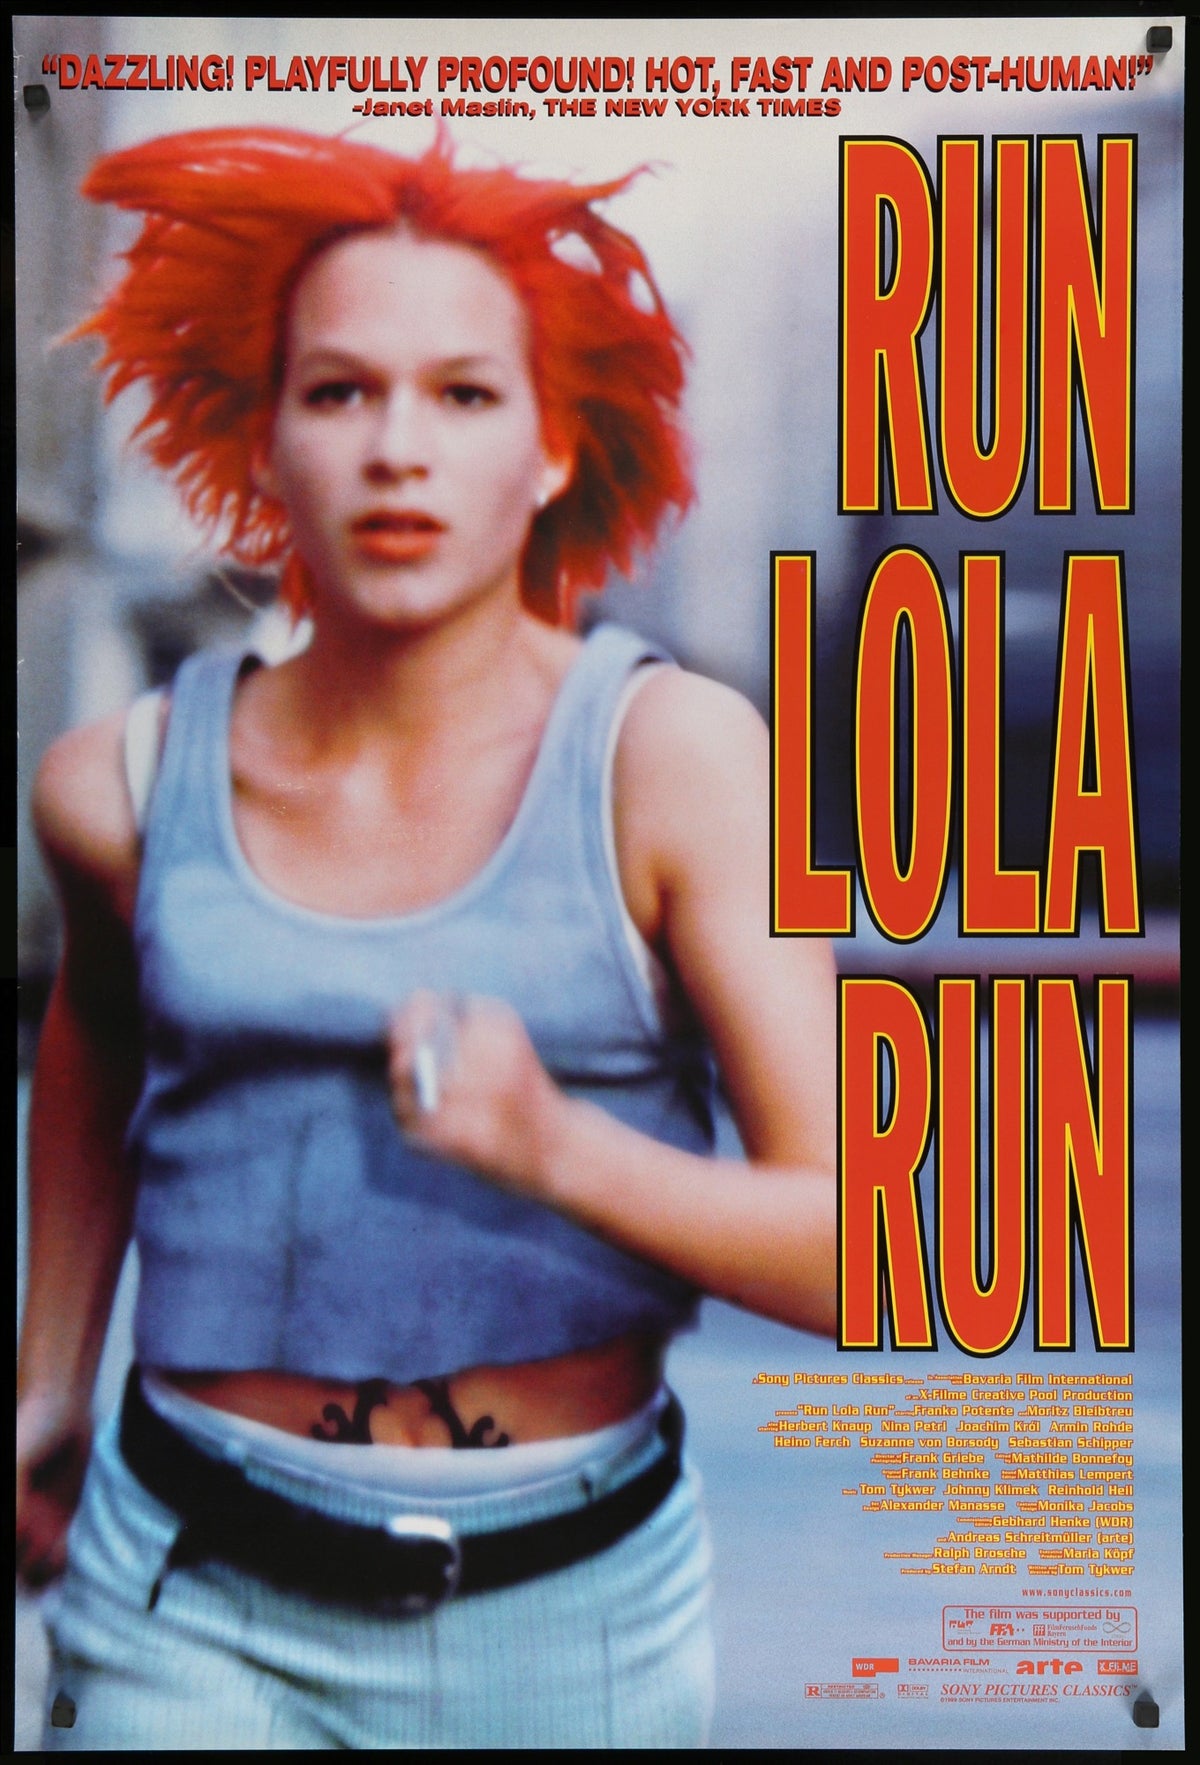 Run Lola Run (1998) original movie poster for sale at Original Film Art